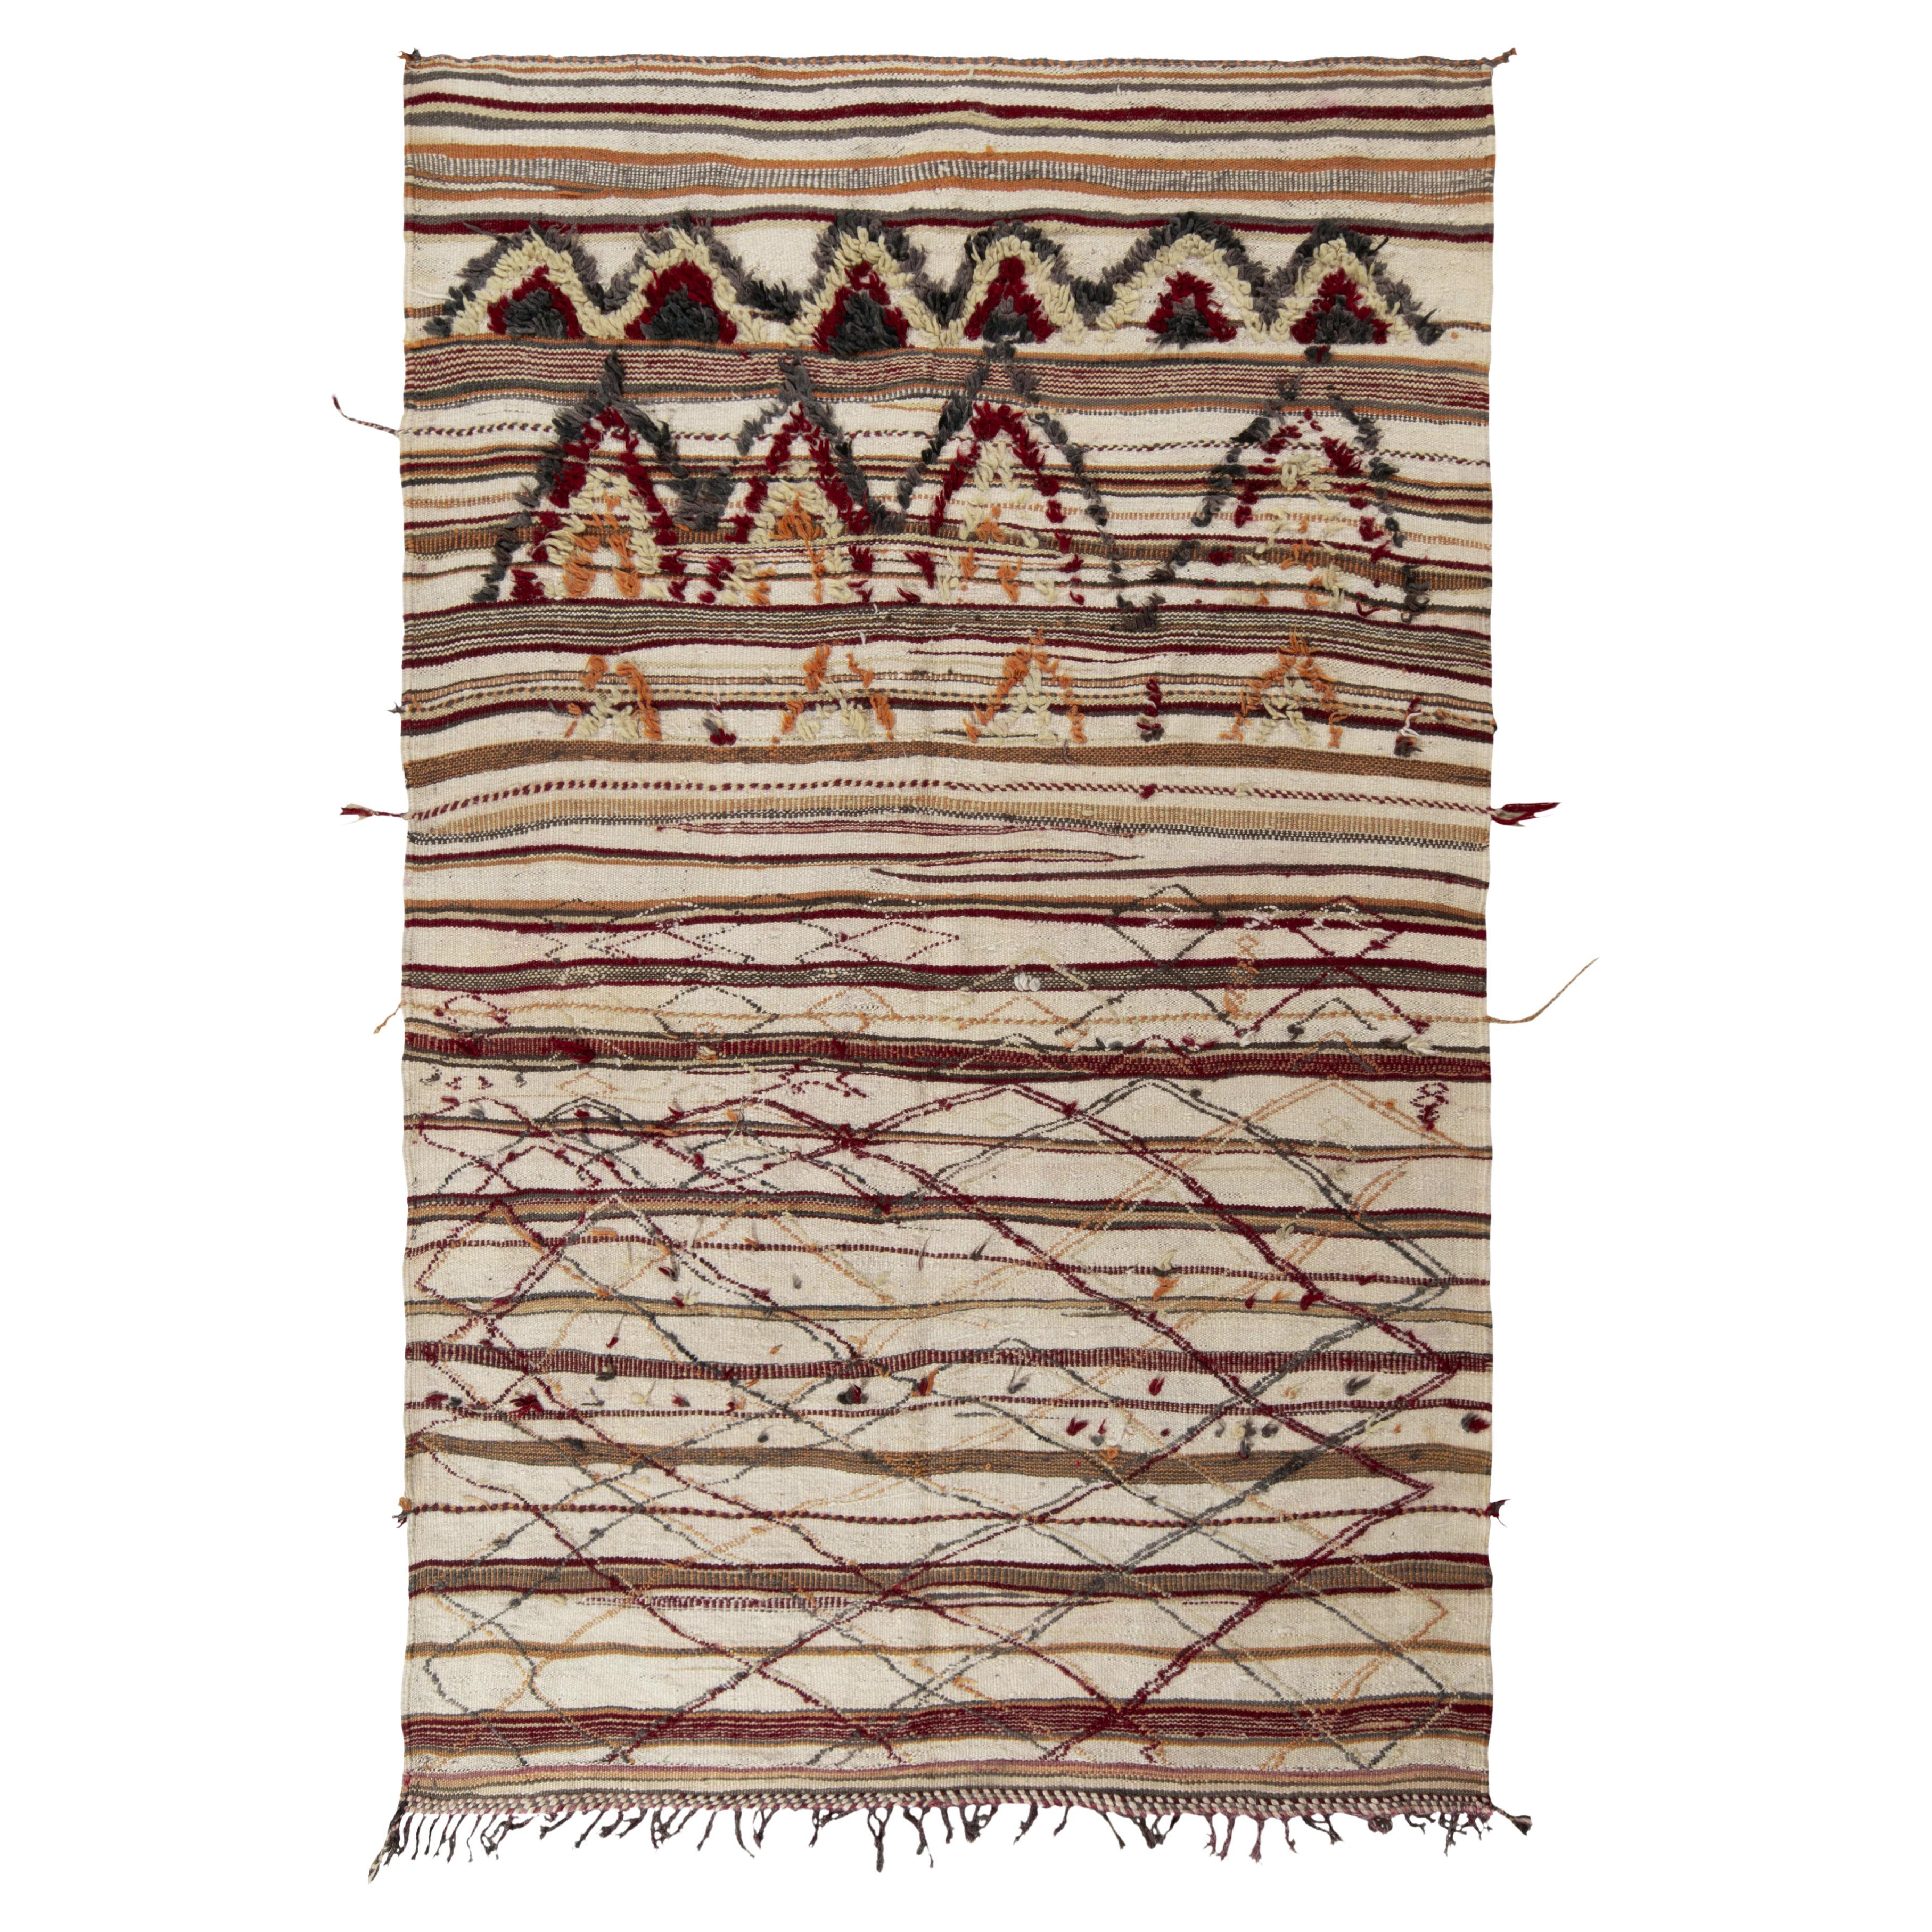 Vintage Berber rug in Beige-Brown, High-Low Geometric Pattern by Rug & Kilim